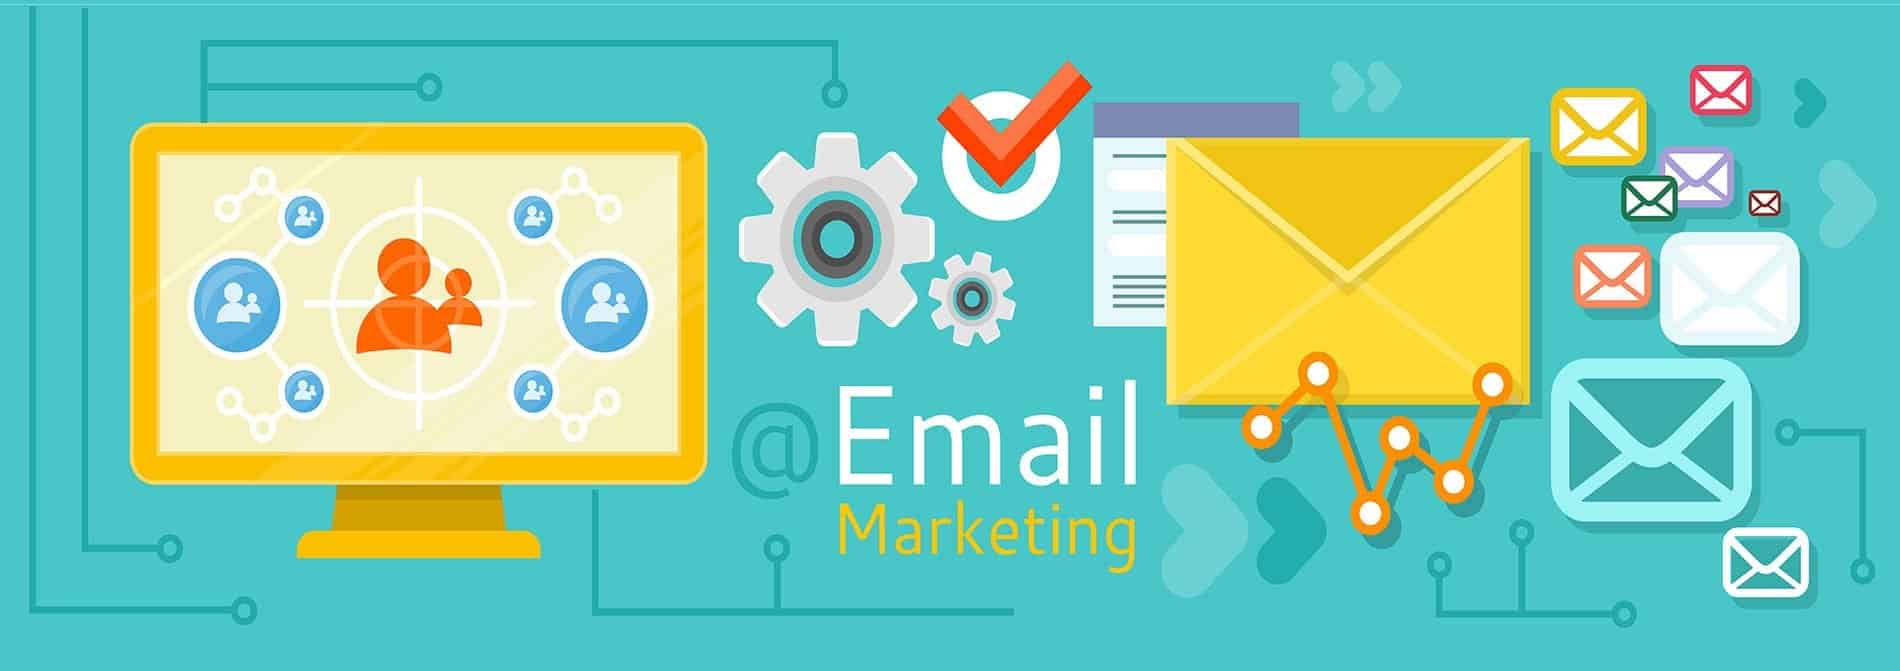 التسويق عبر البريد الإلكتروني وكيفية إرسال الرسائل إلى البريد مباشرة